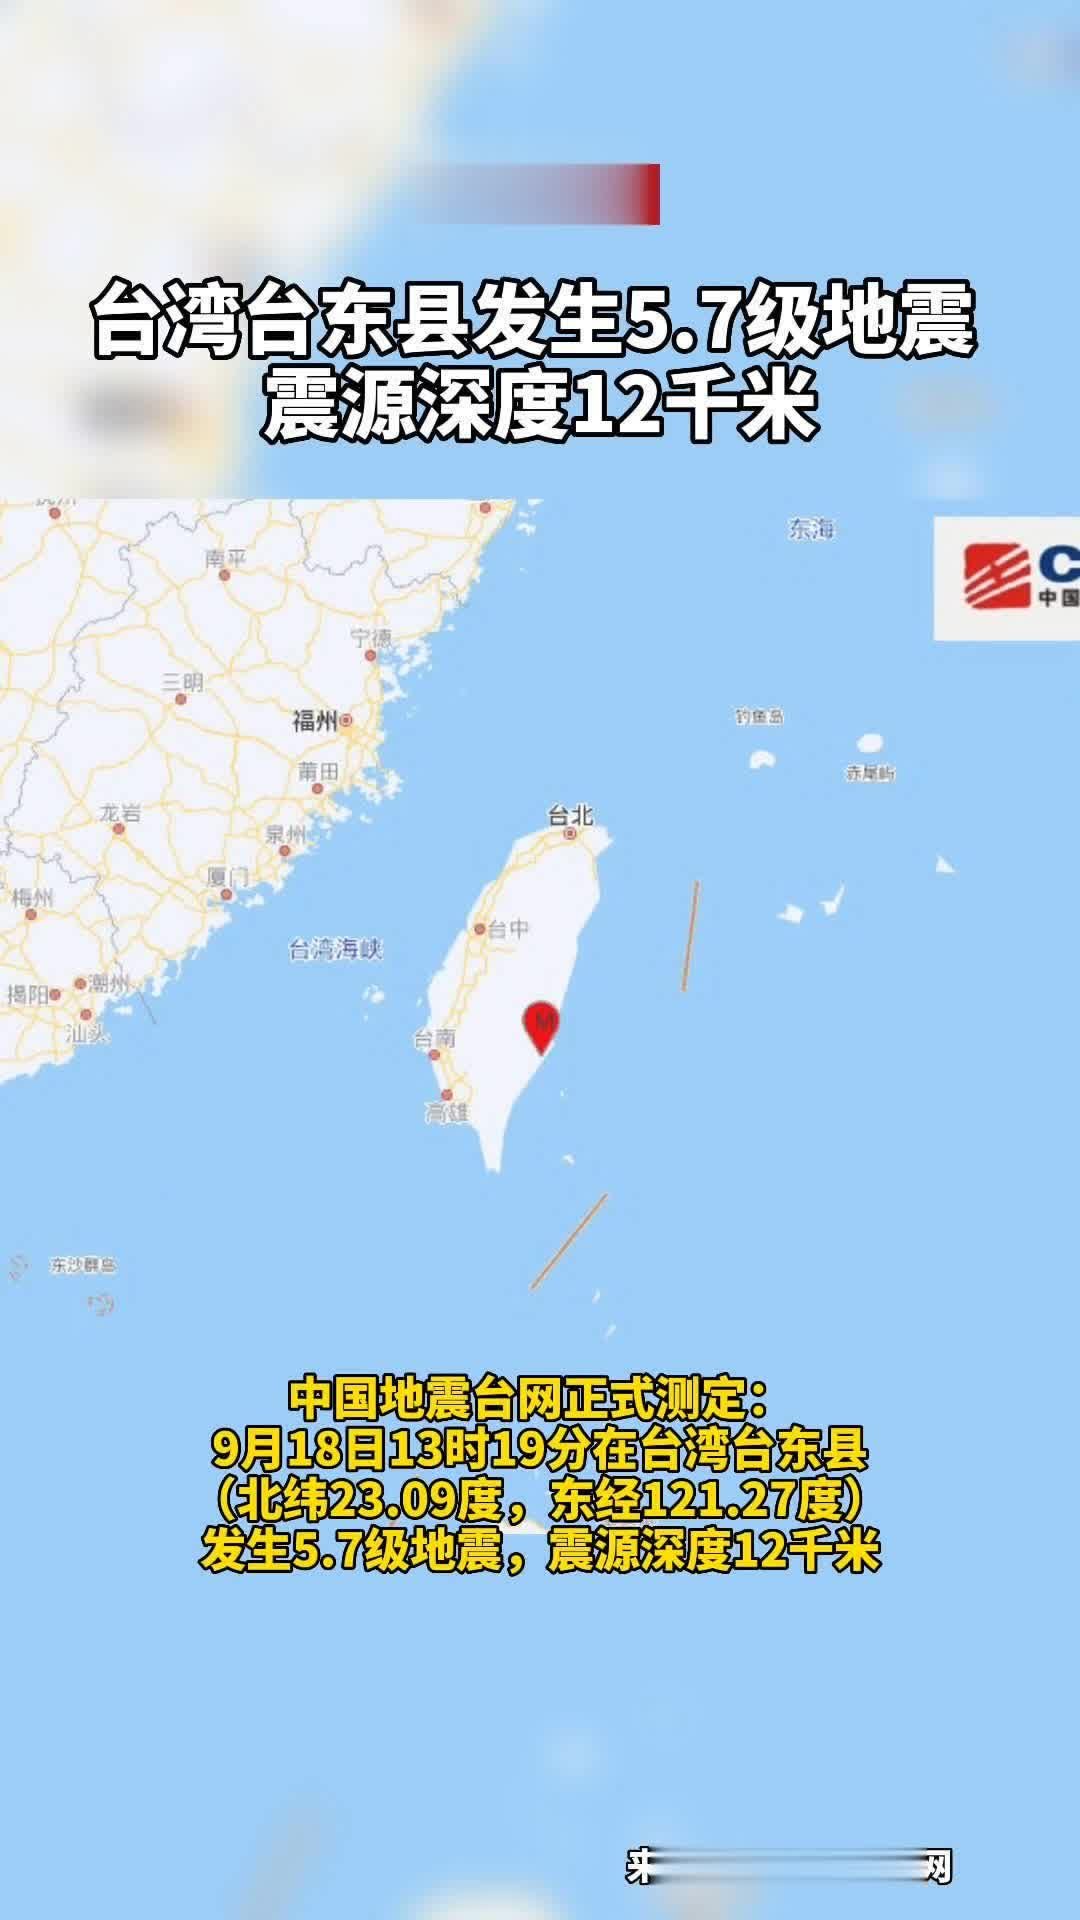 東部でM6.8の地震 台東で最大震度6強 台湾全土で揺れ観測 - フォーカス台湾